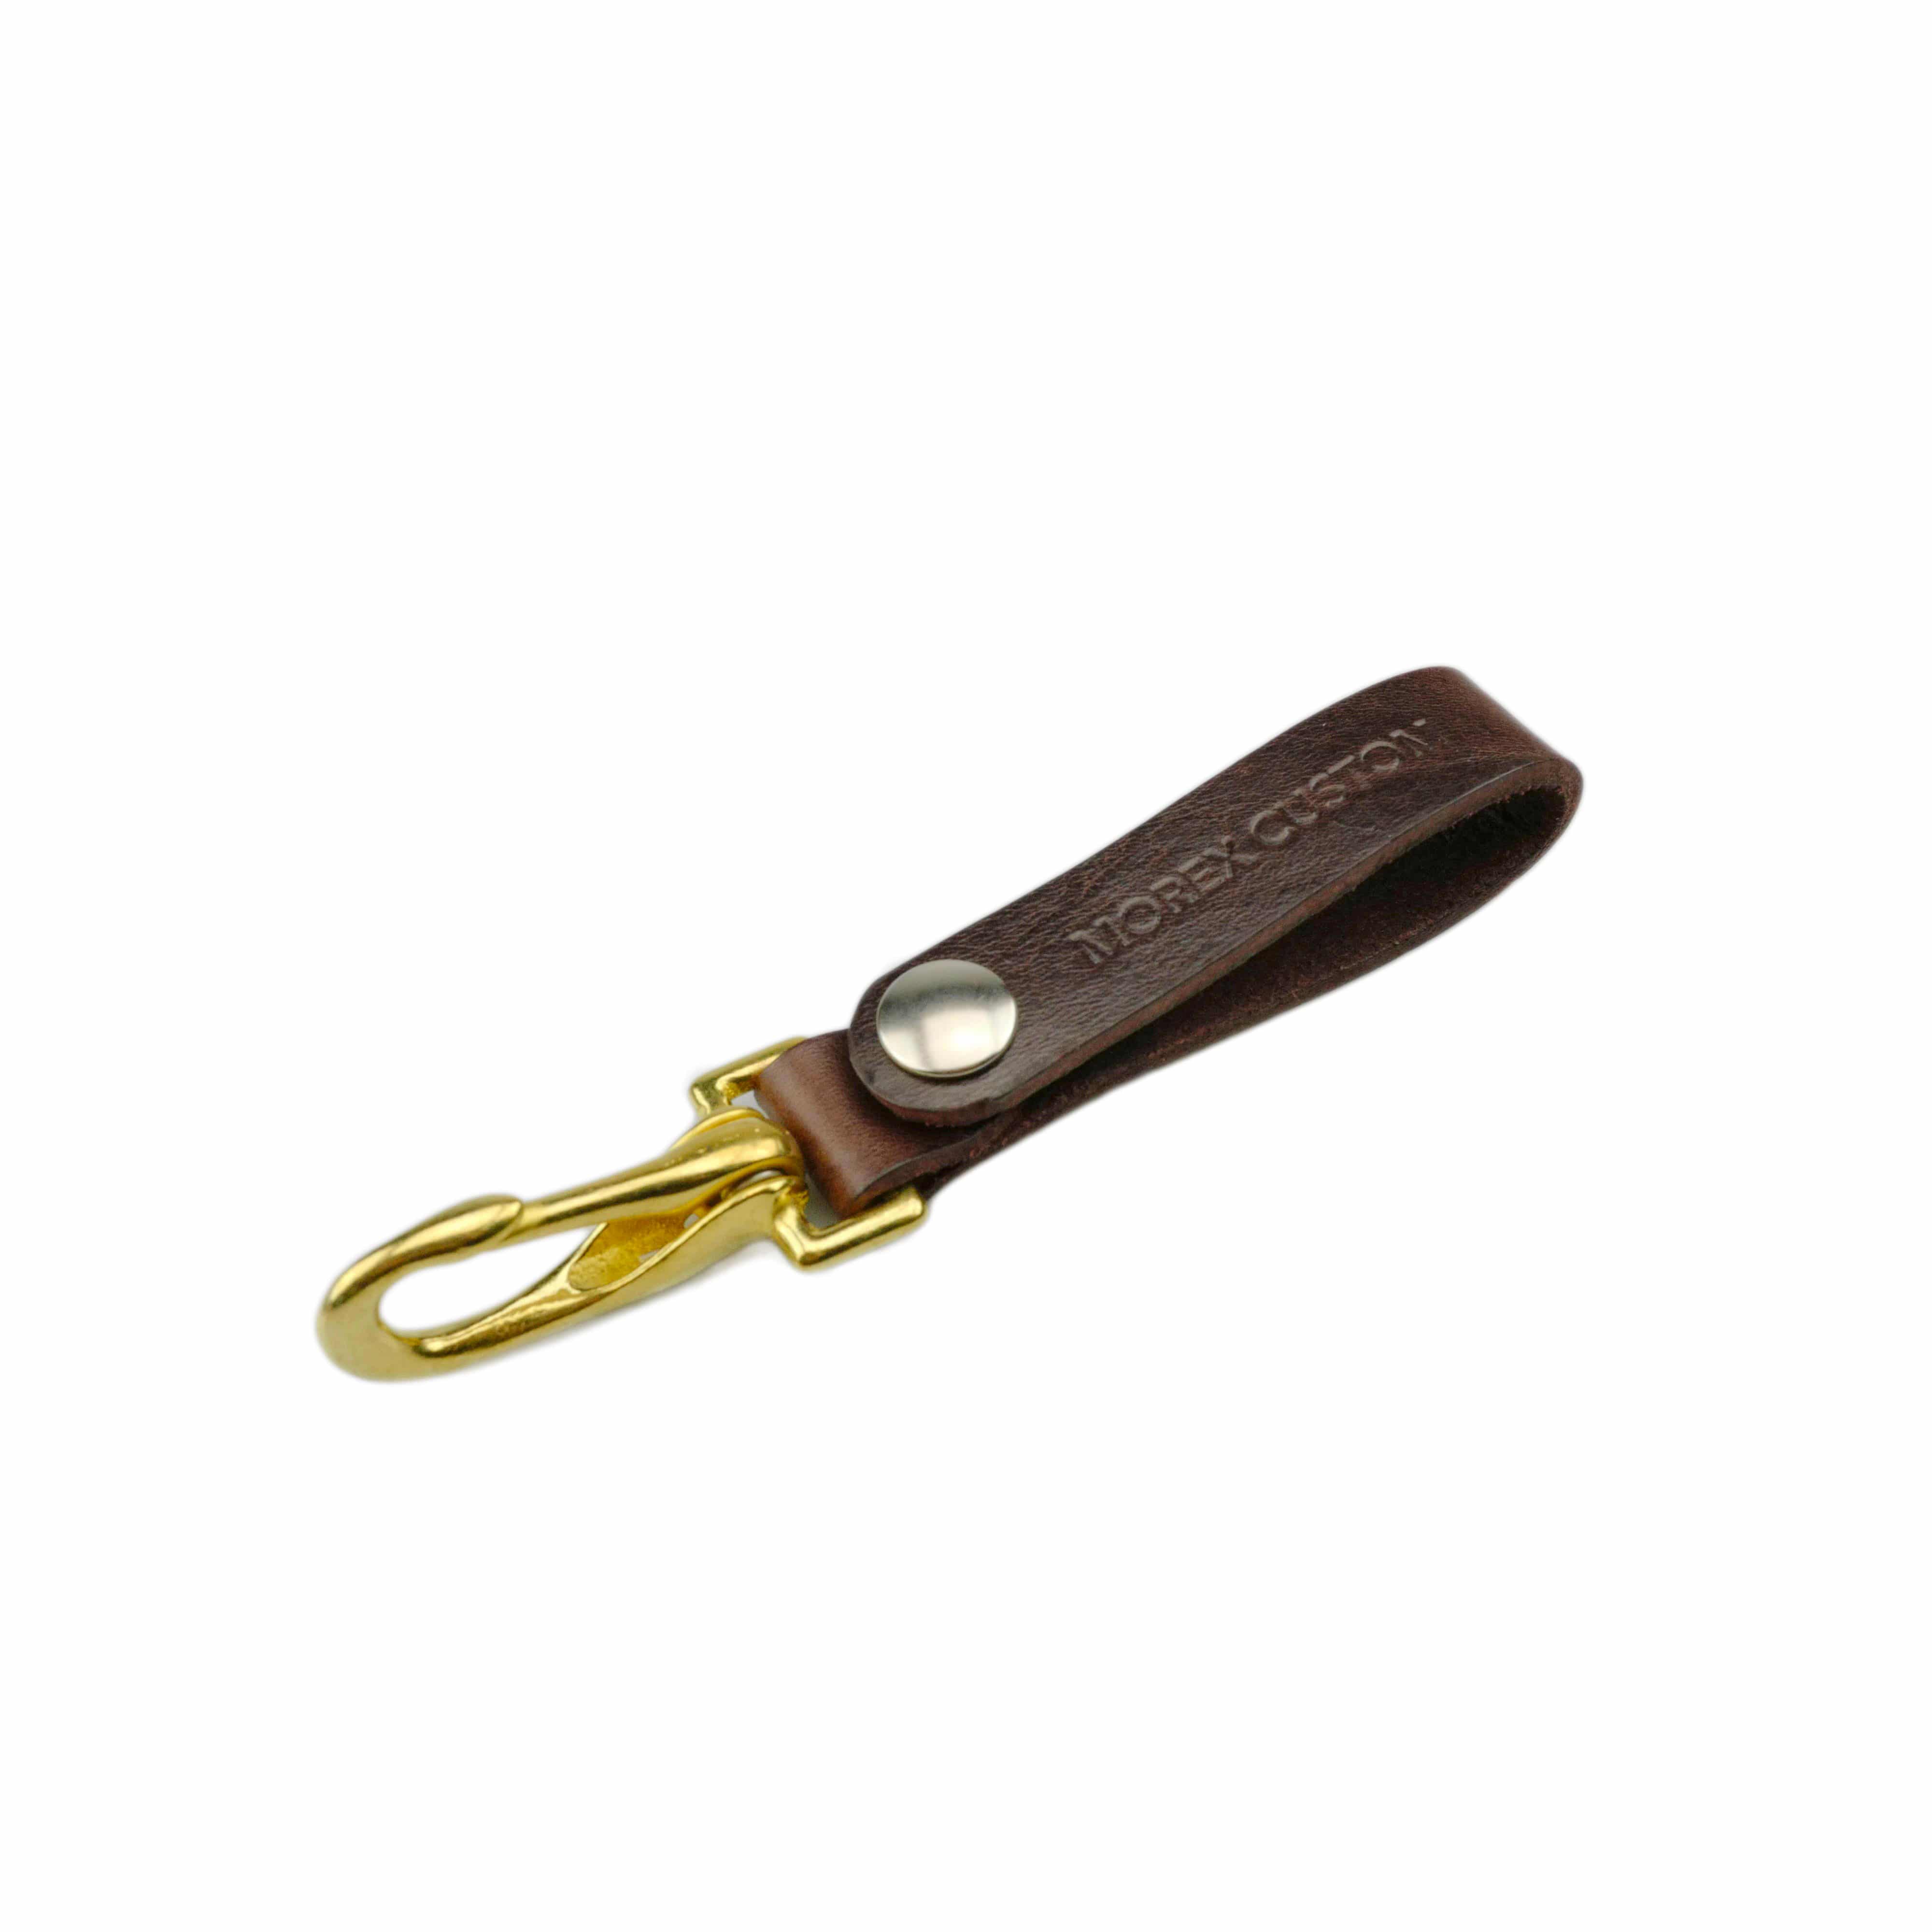 Brown strap key ring 